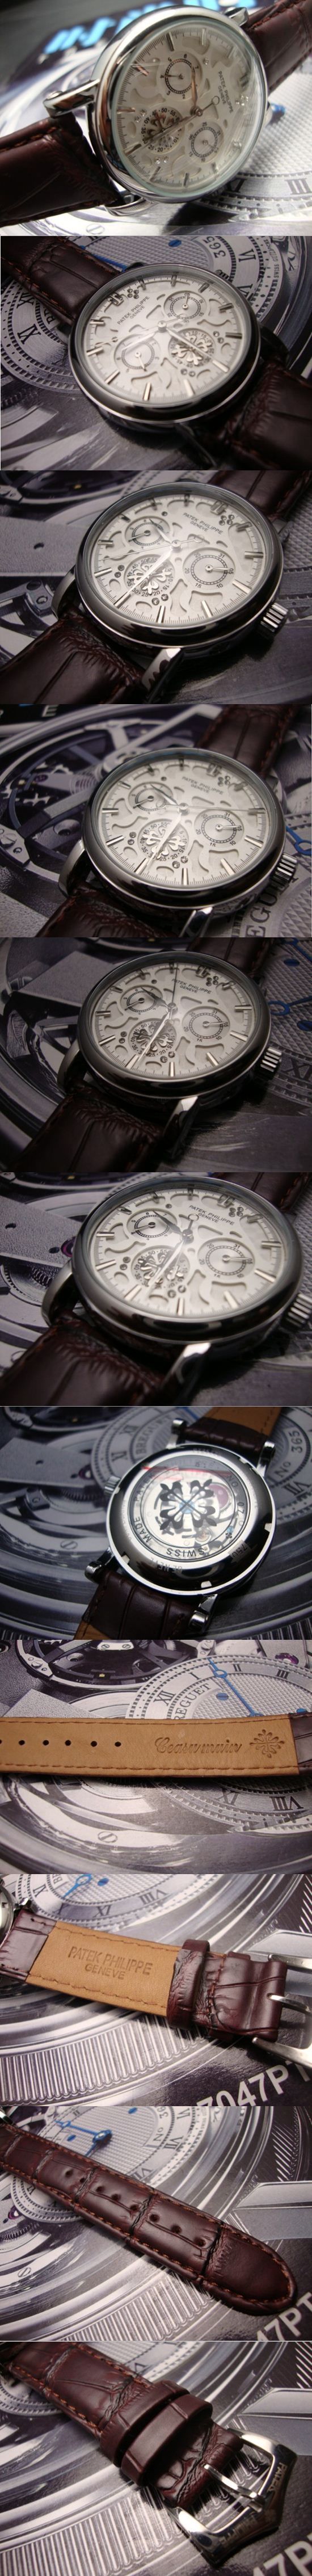 おしゃれなブランド時計がPATEK PHILIPPE-パテック フィリップ腕時計 パテック フィリップ 男/女腕時計 PATEK-PHILIPPE-N-014A を提供します.